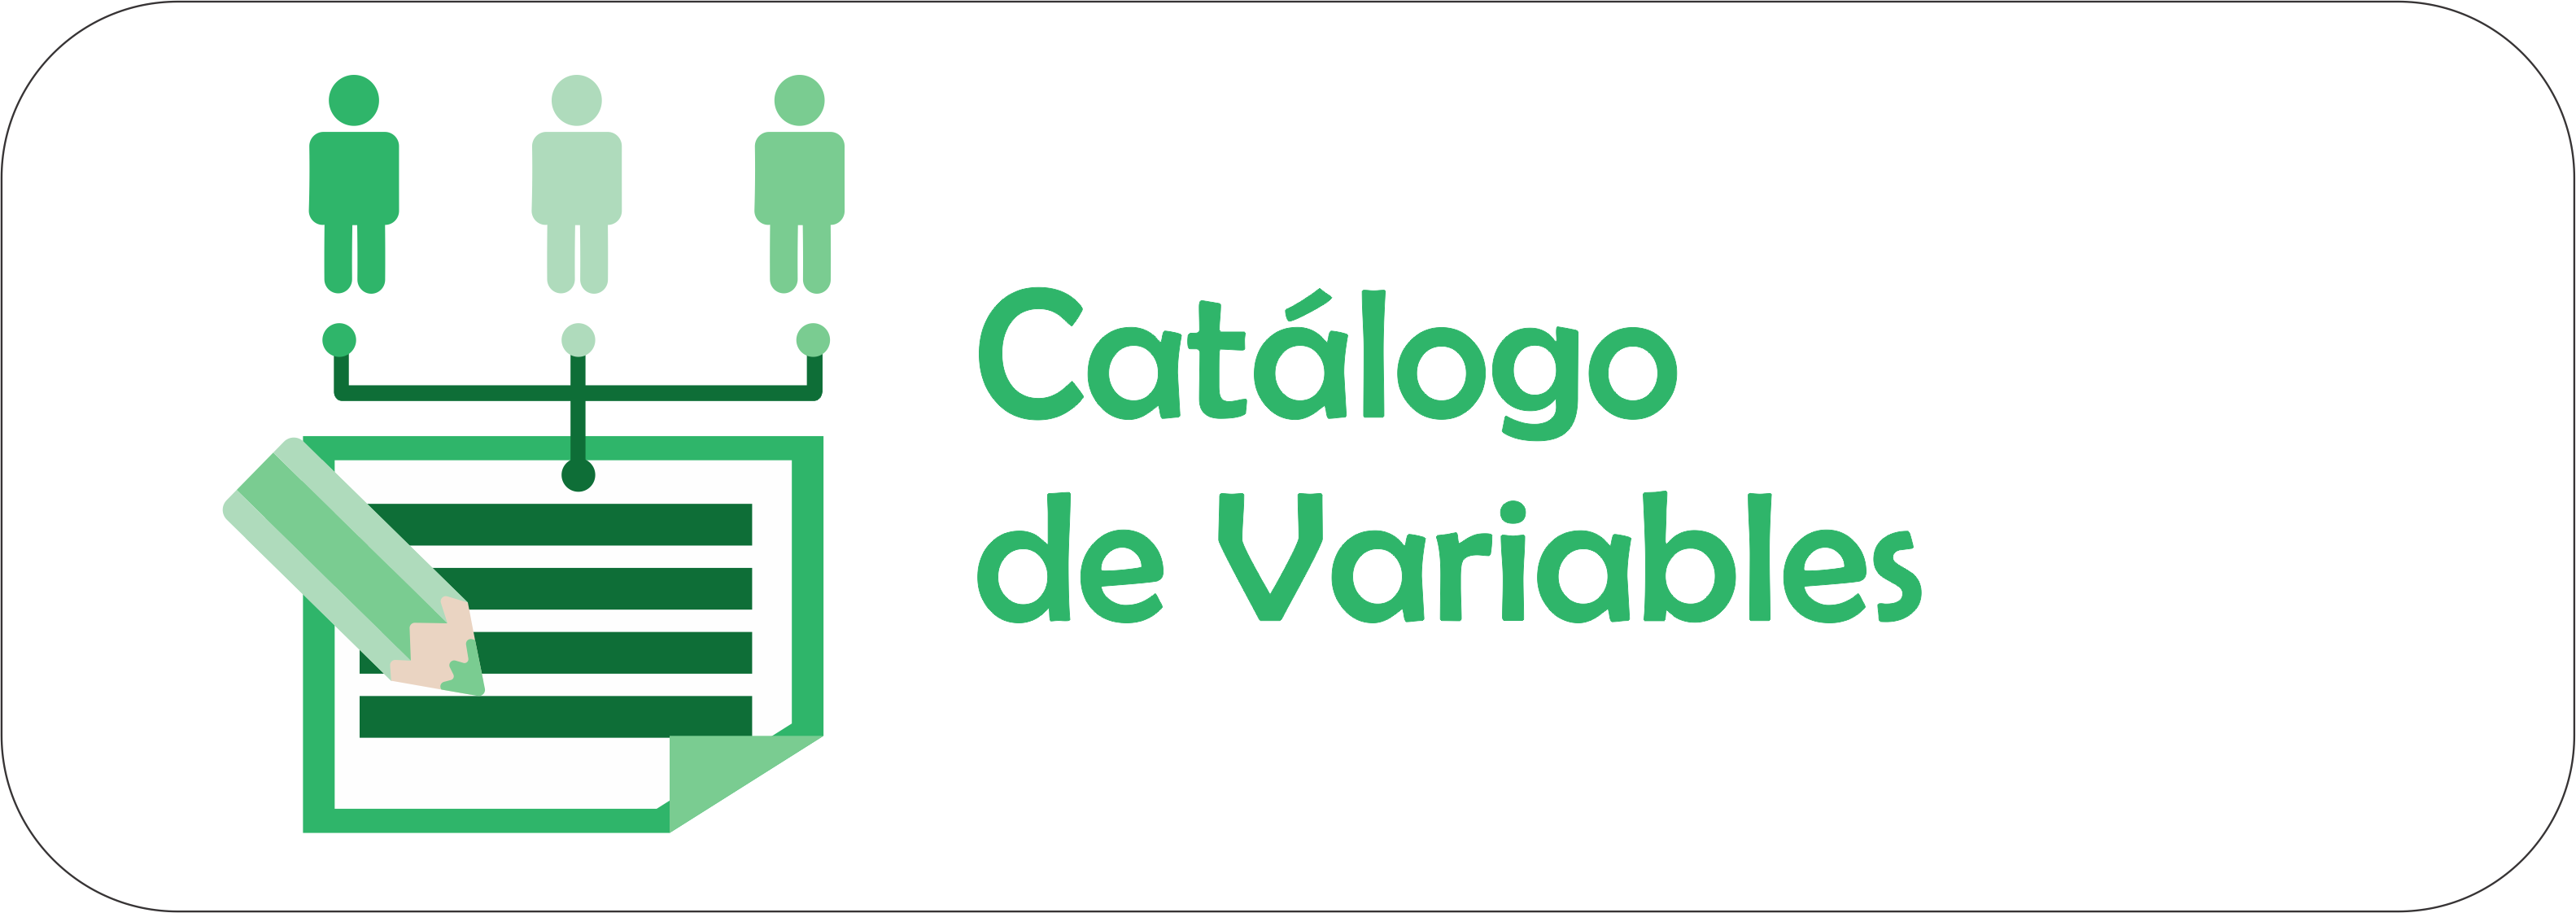 Imagen de presentación del Catálogo de Variables